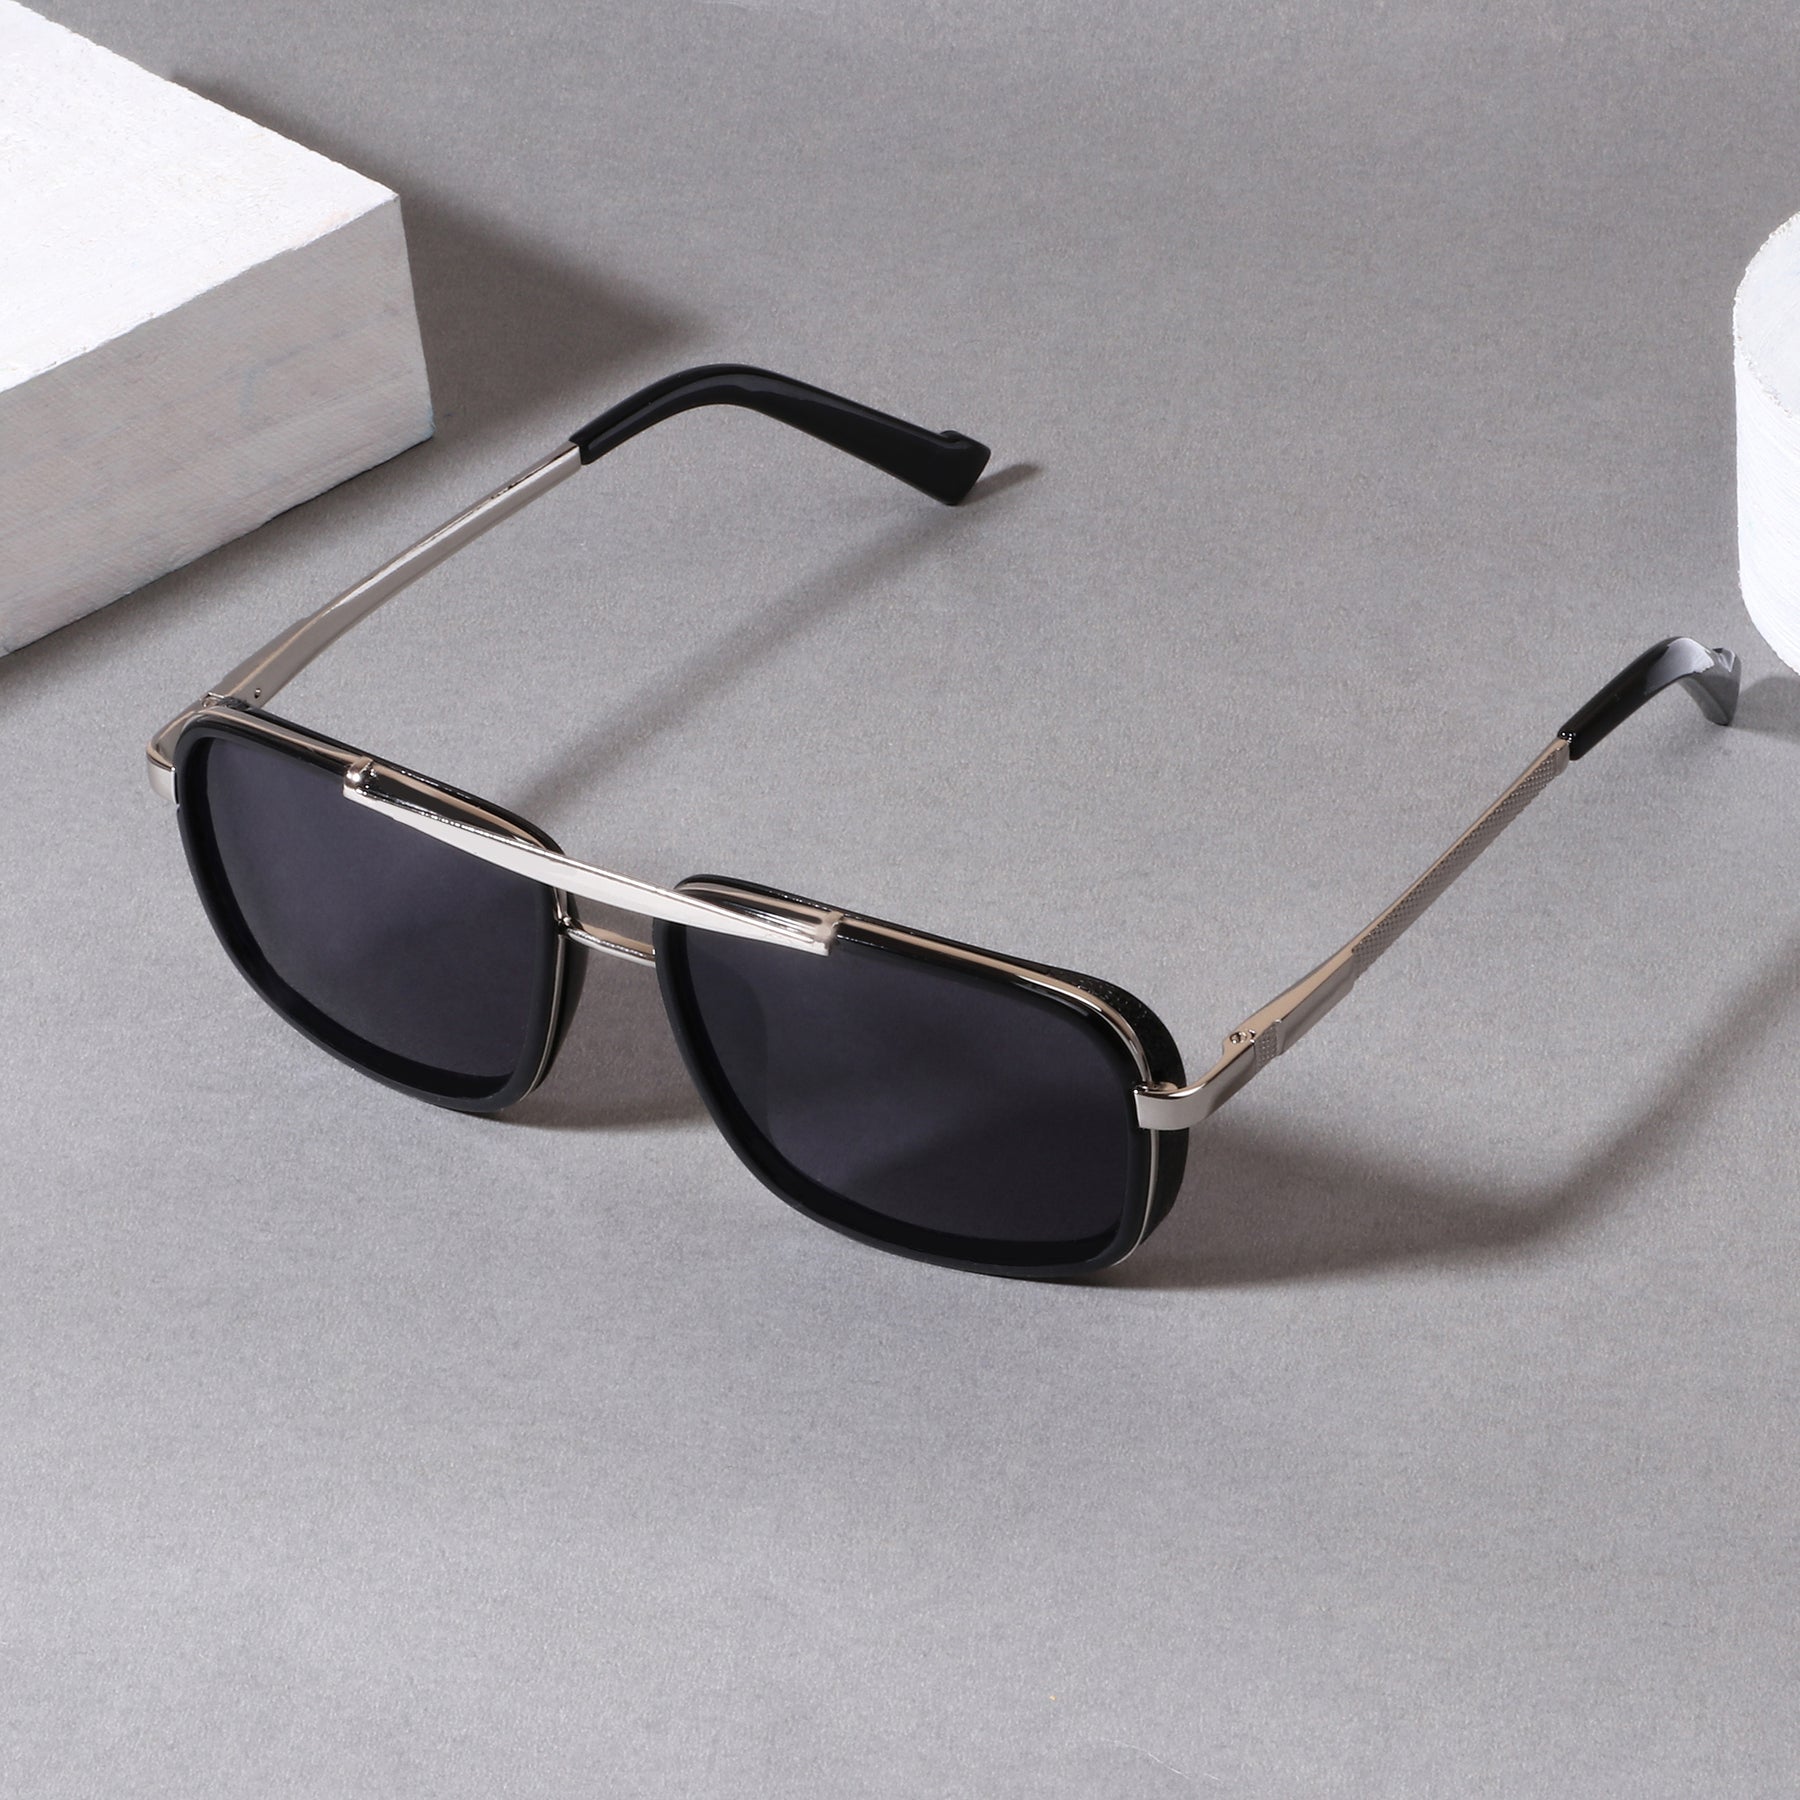 Wild Edition Silver Black Sunglasses – Go Glassic